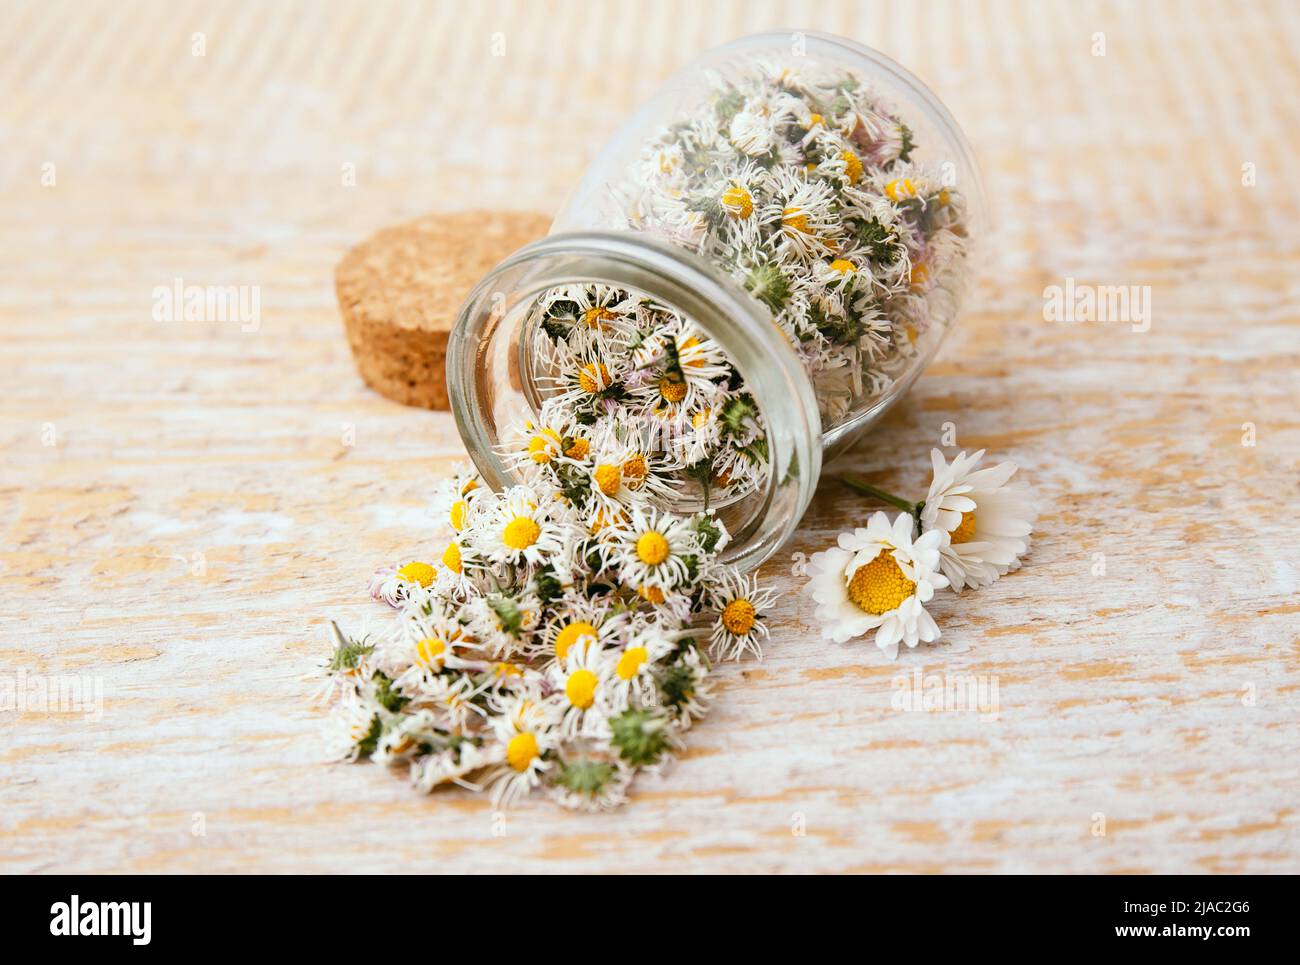 Planta medicinal herbaria seca Common Daisy, también conocida como Bellis perennis. Flores secas en tarro de vidrio y cuchara de madera, listas para hacer té de hierbas. Foto de stock